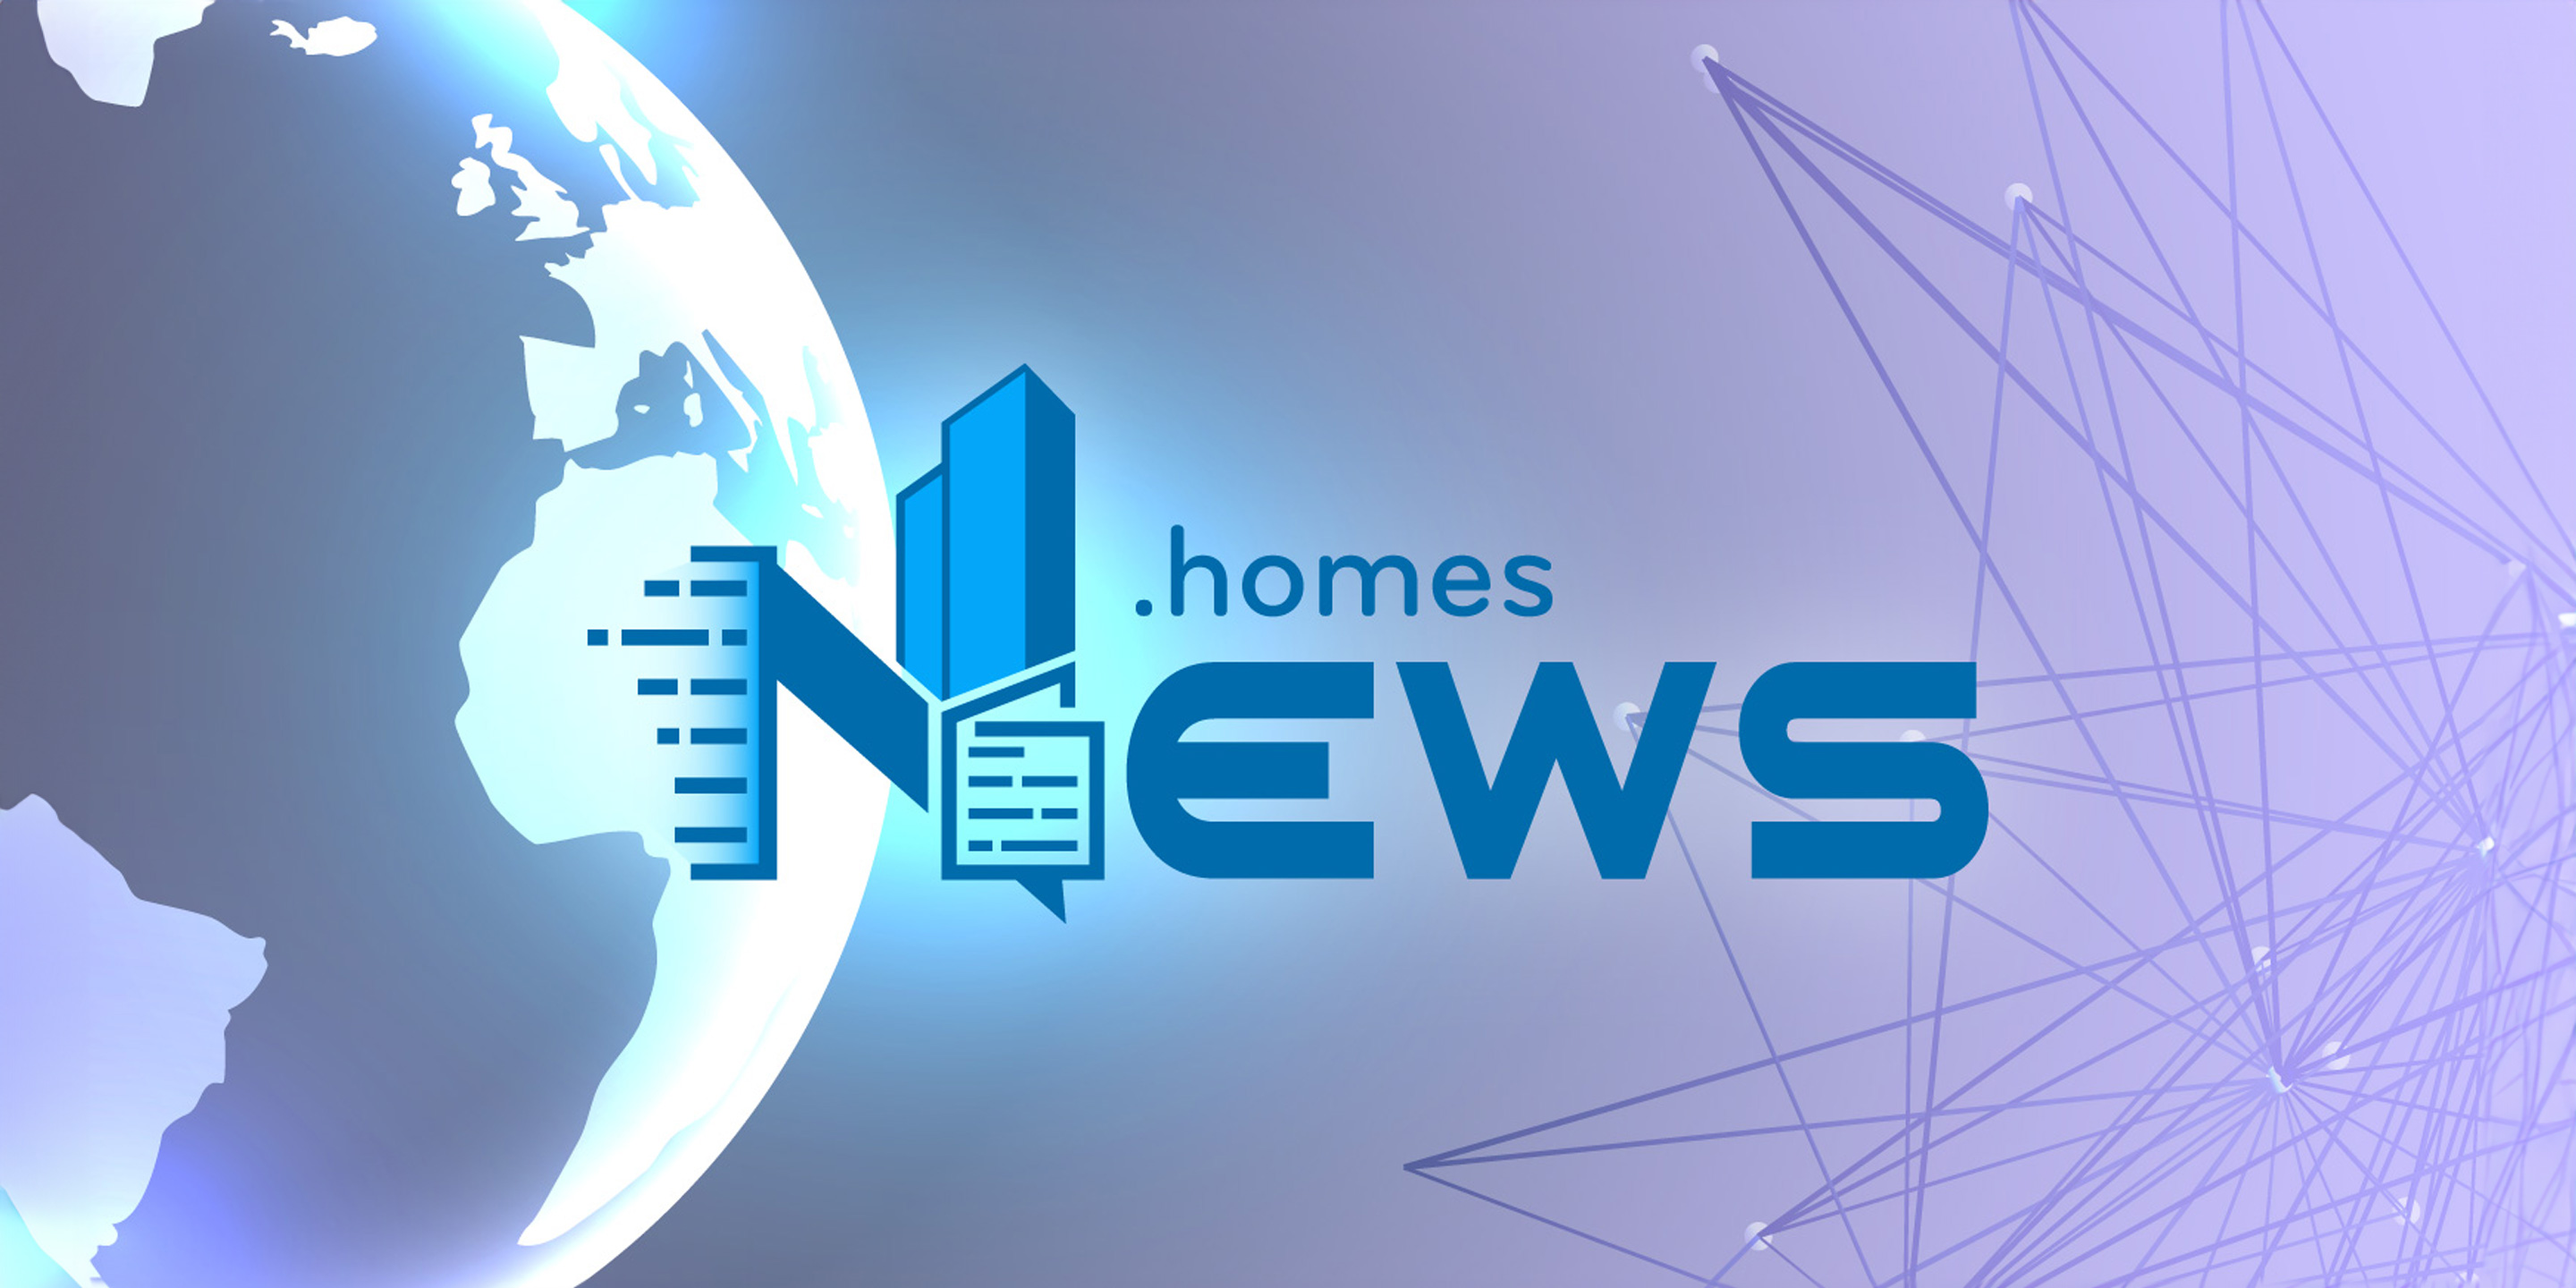 News and Homes